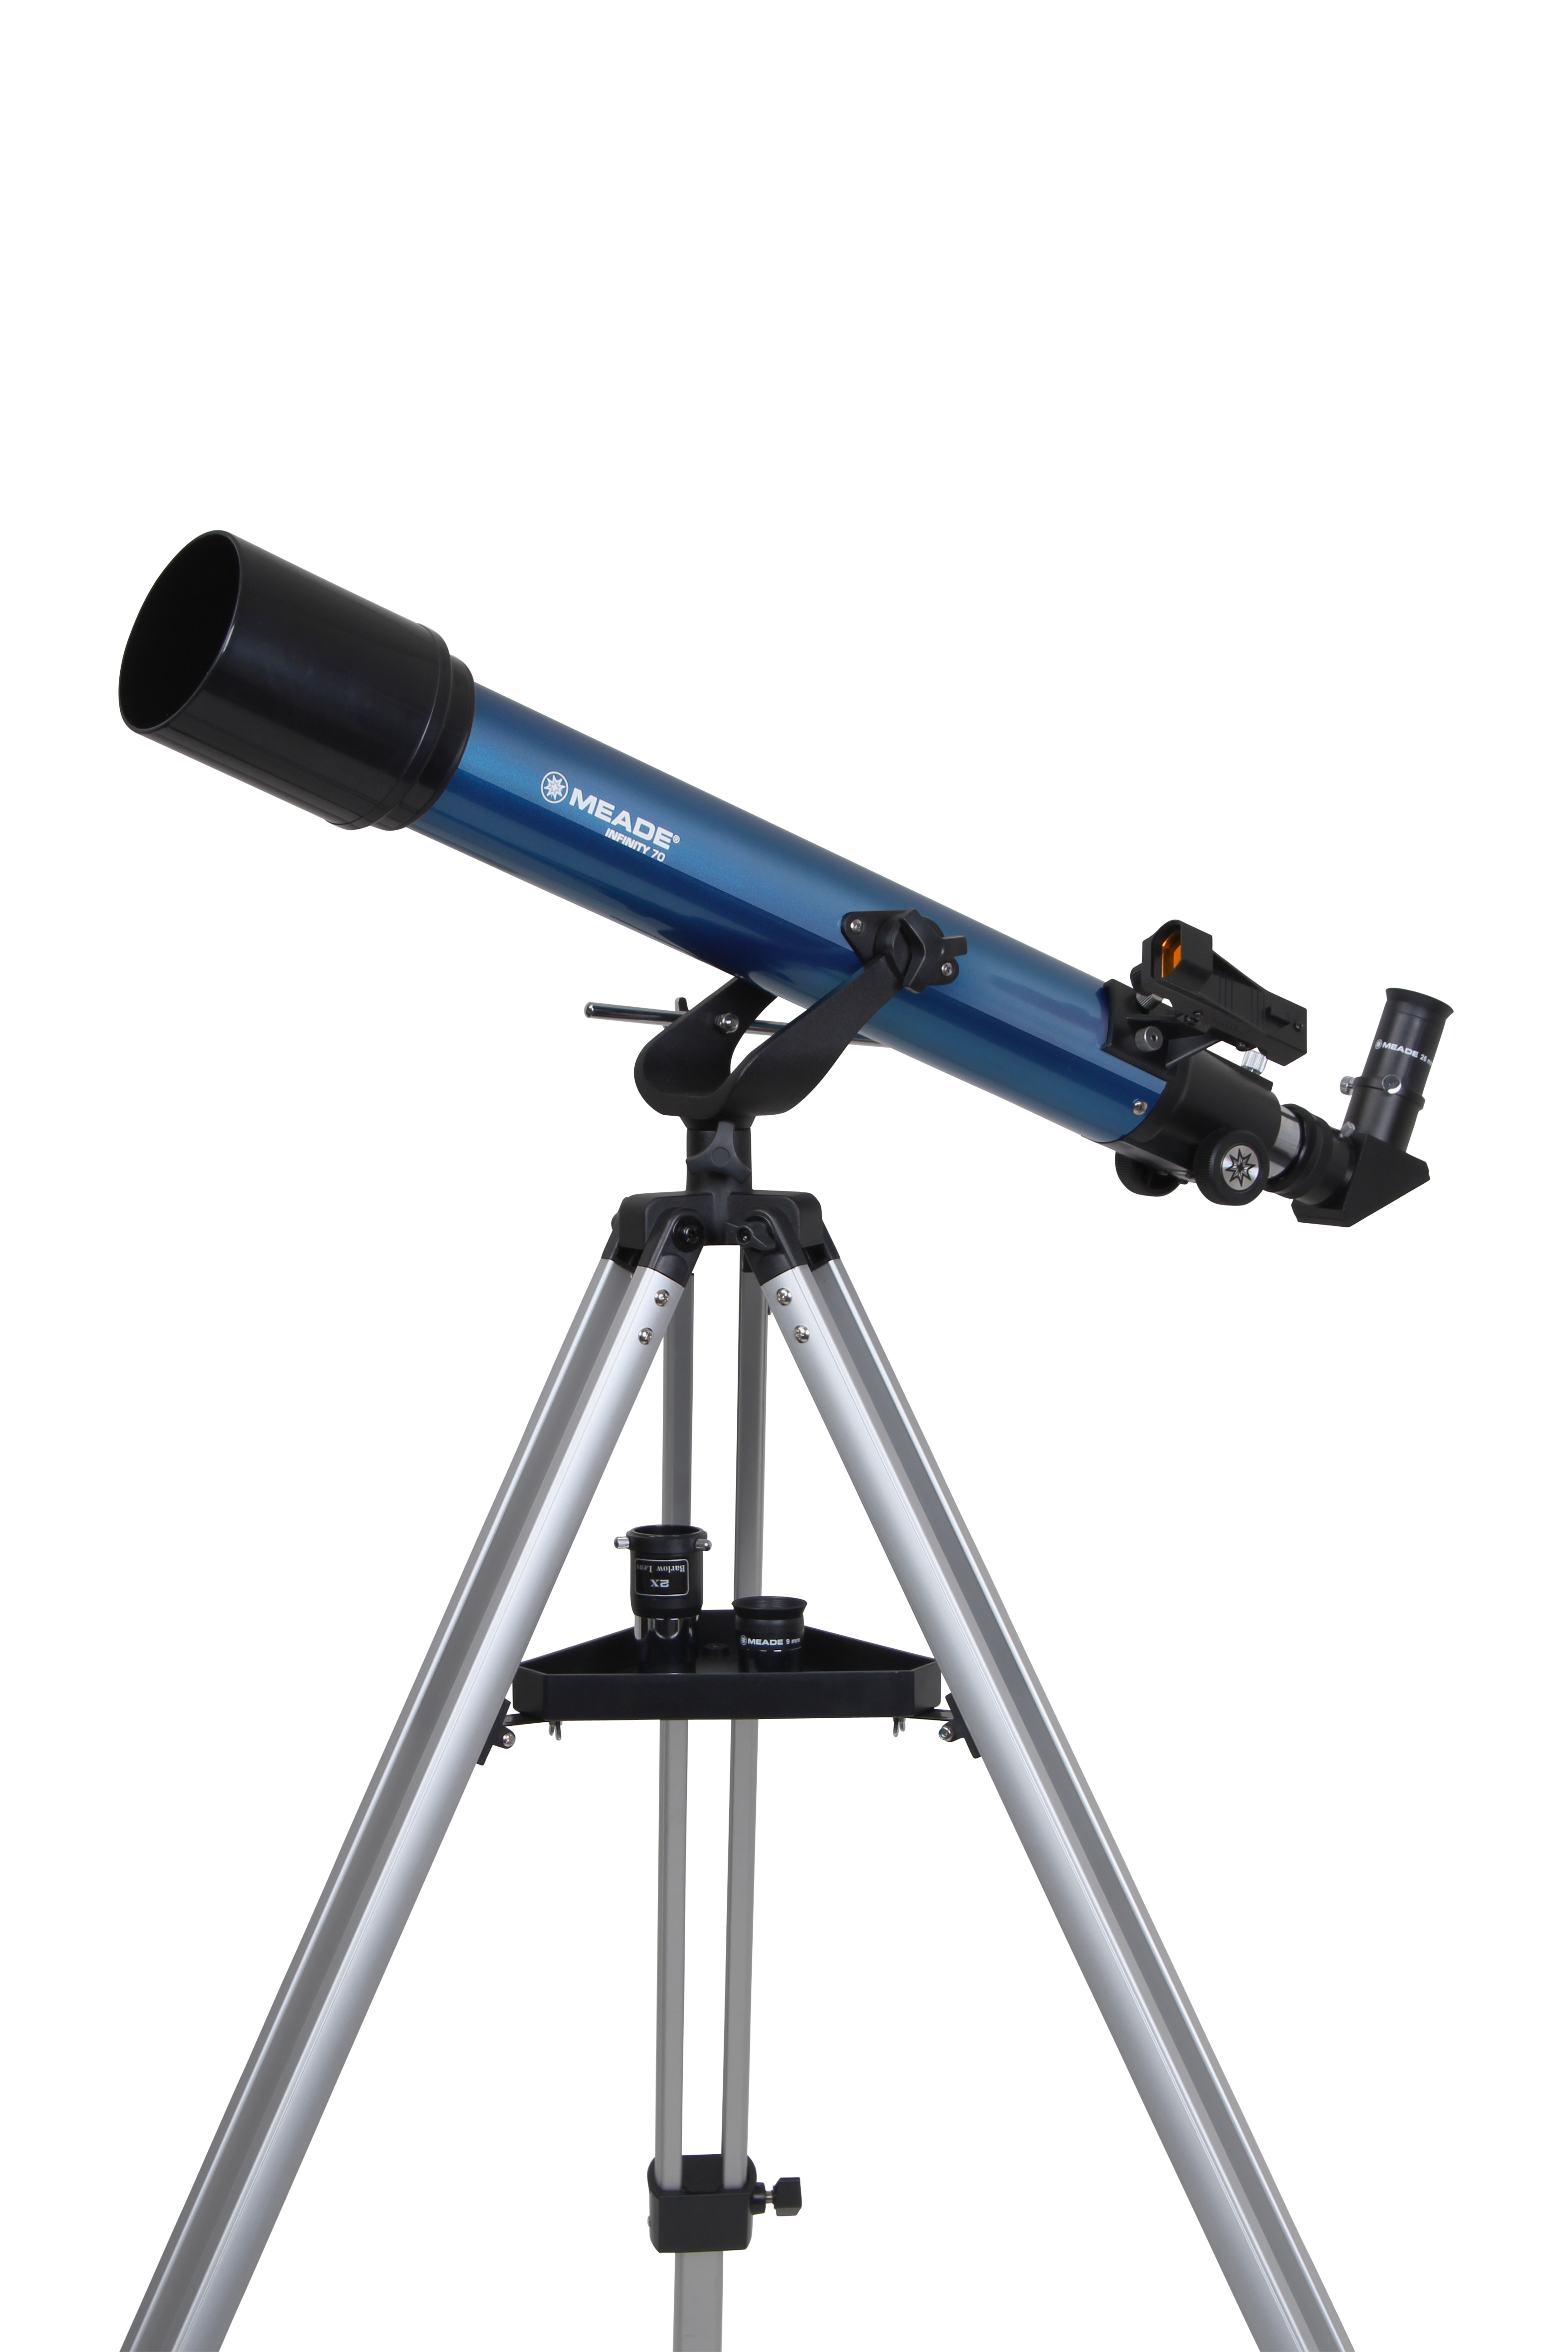 望远镜